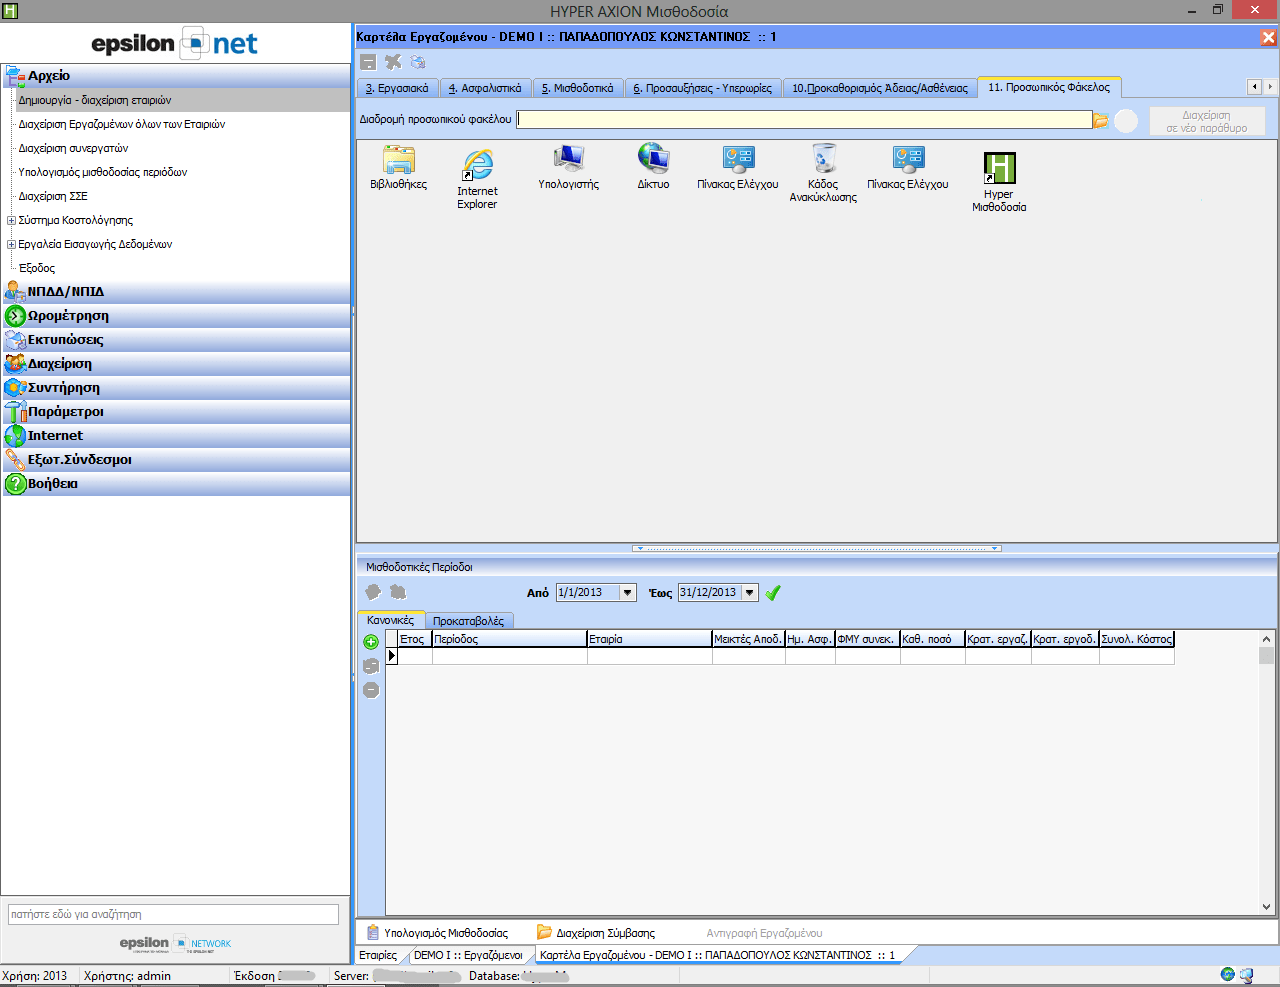 Δυνατότητα σύνδεσης εργαζομένου με επιλεγμένο φάκελο στον ηλεκτρονικό υπολογιστή